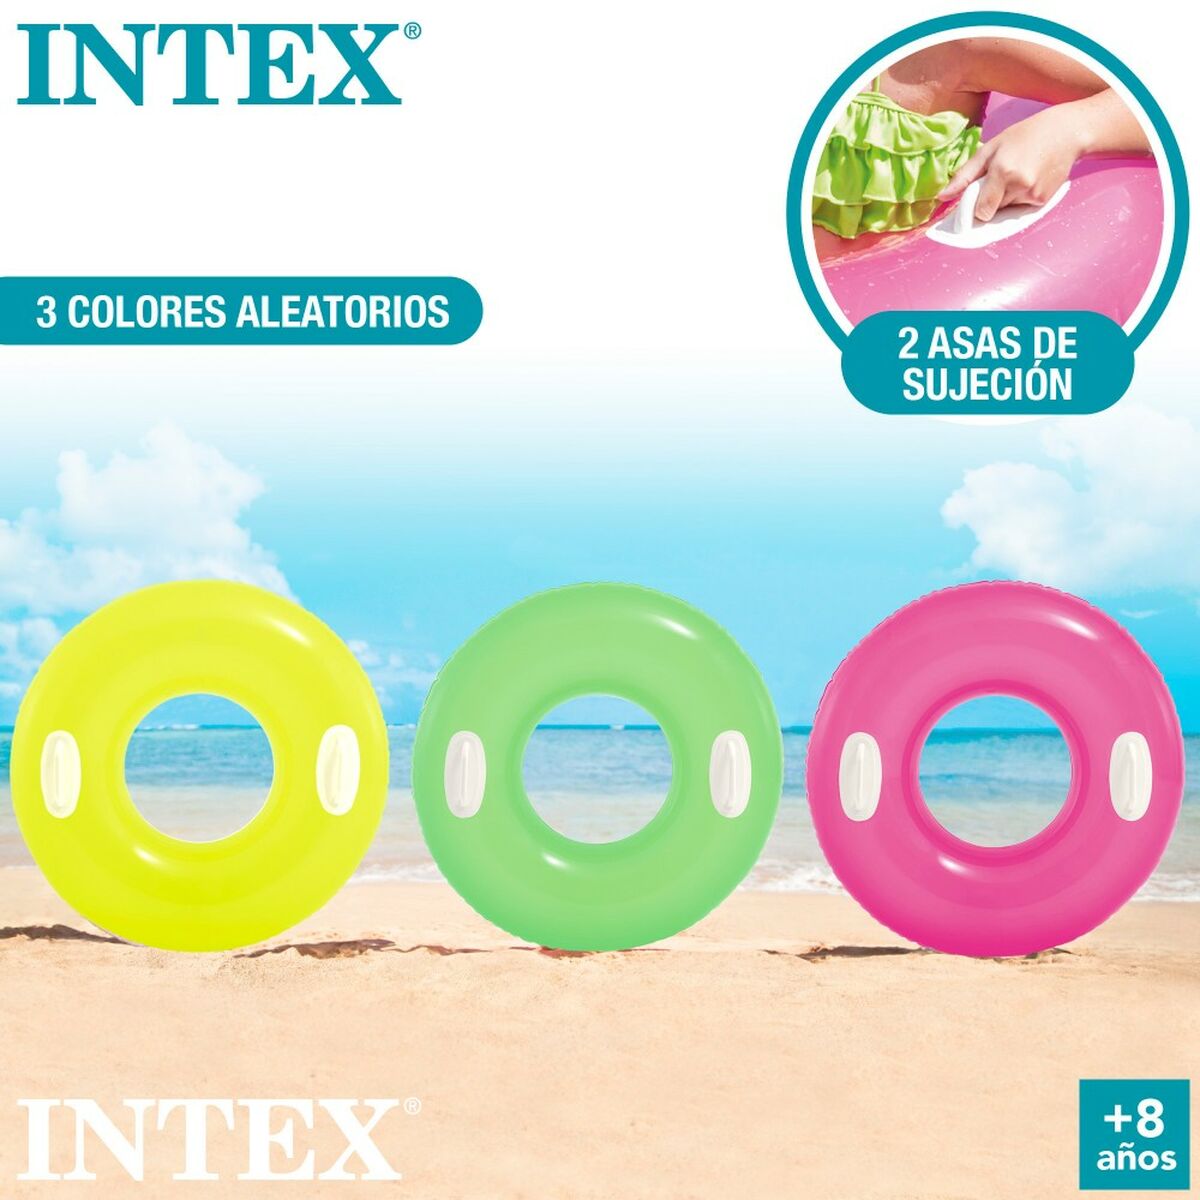 Salvagente Gonfiabile Donut Intex 76 x 15 x 76 cm (24 Unità) - Disponibile in 3-4 giorni lavorativi